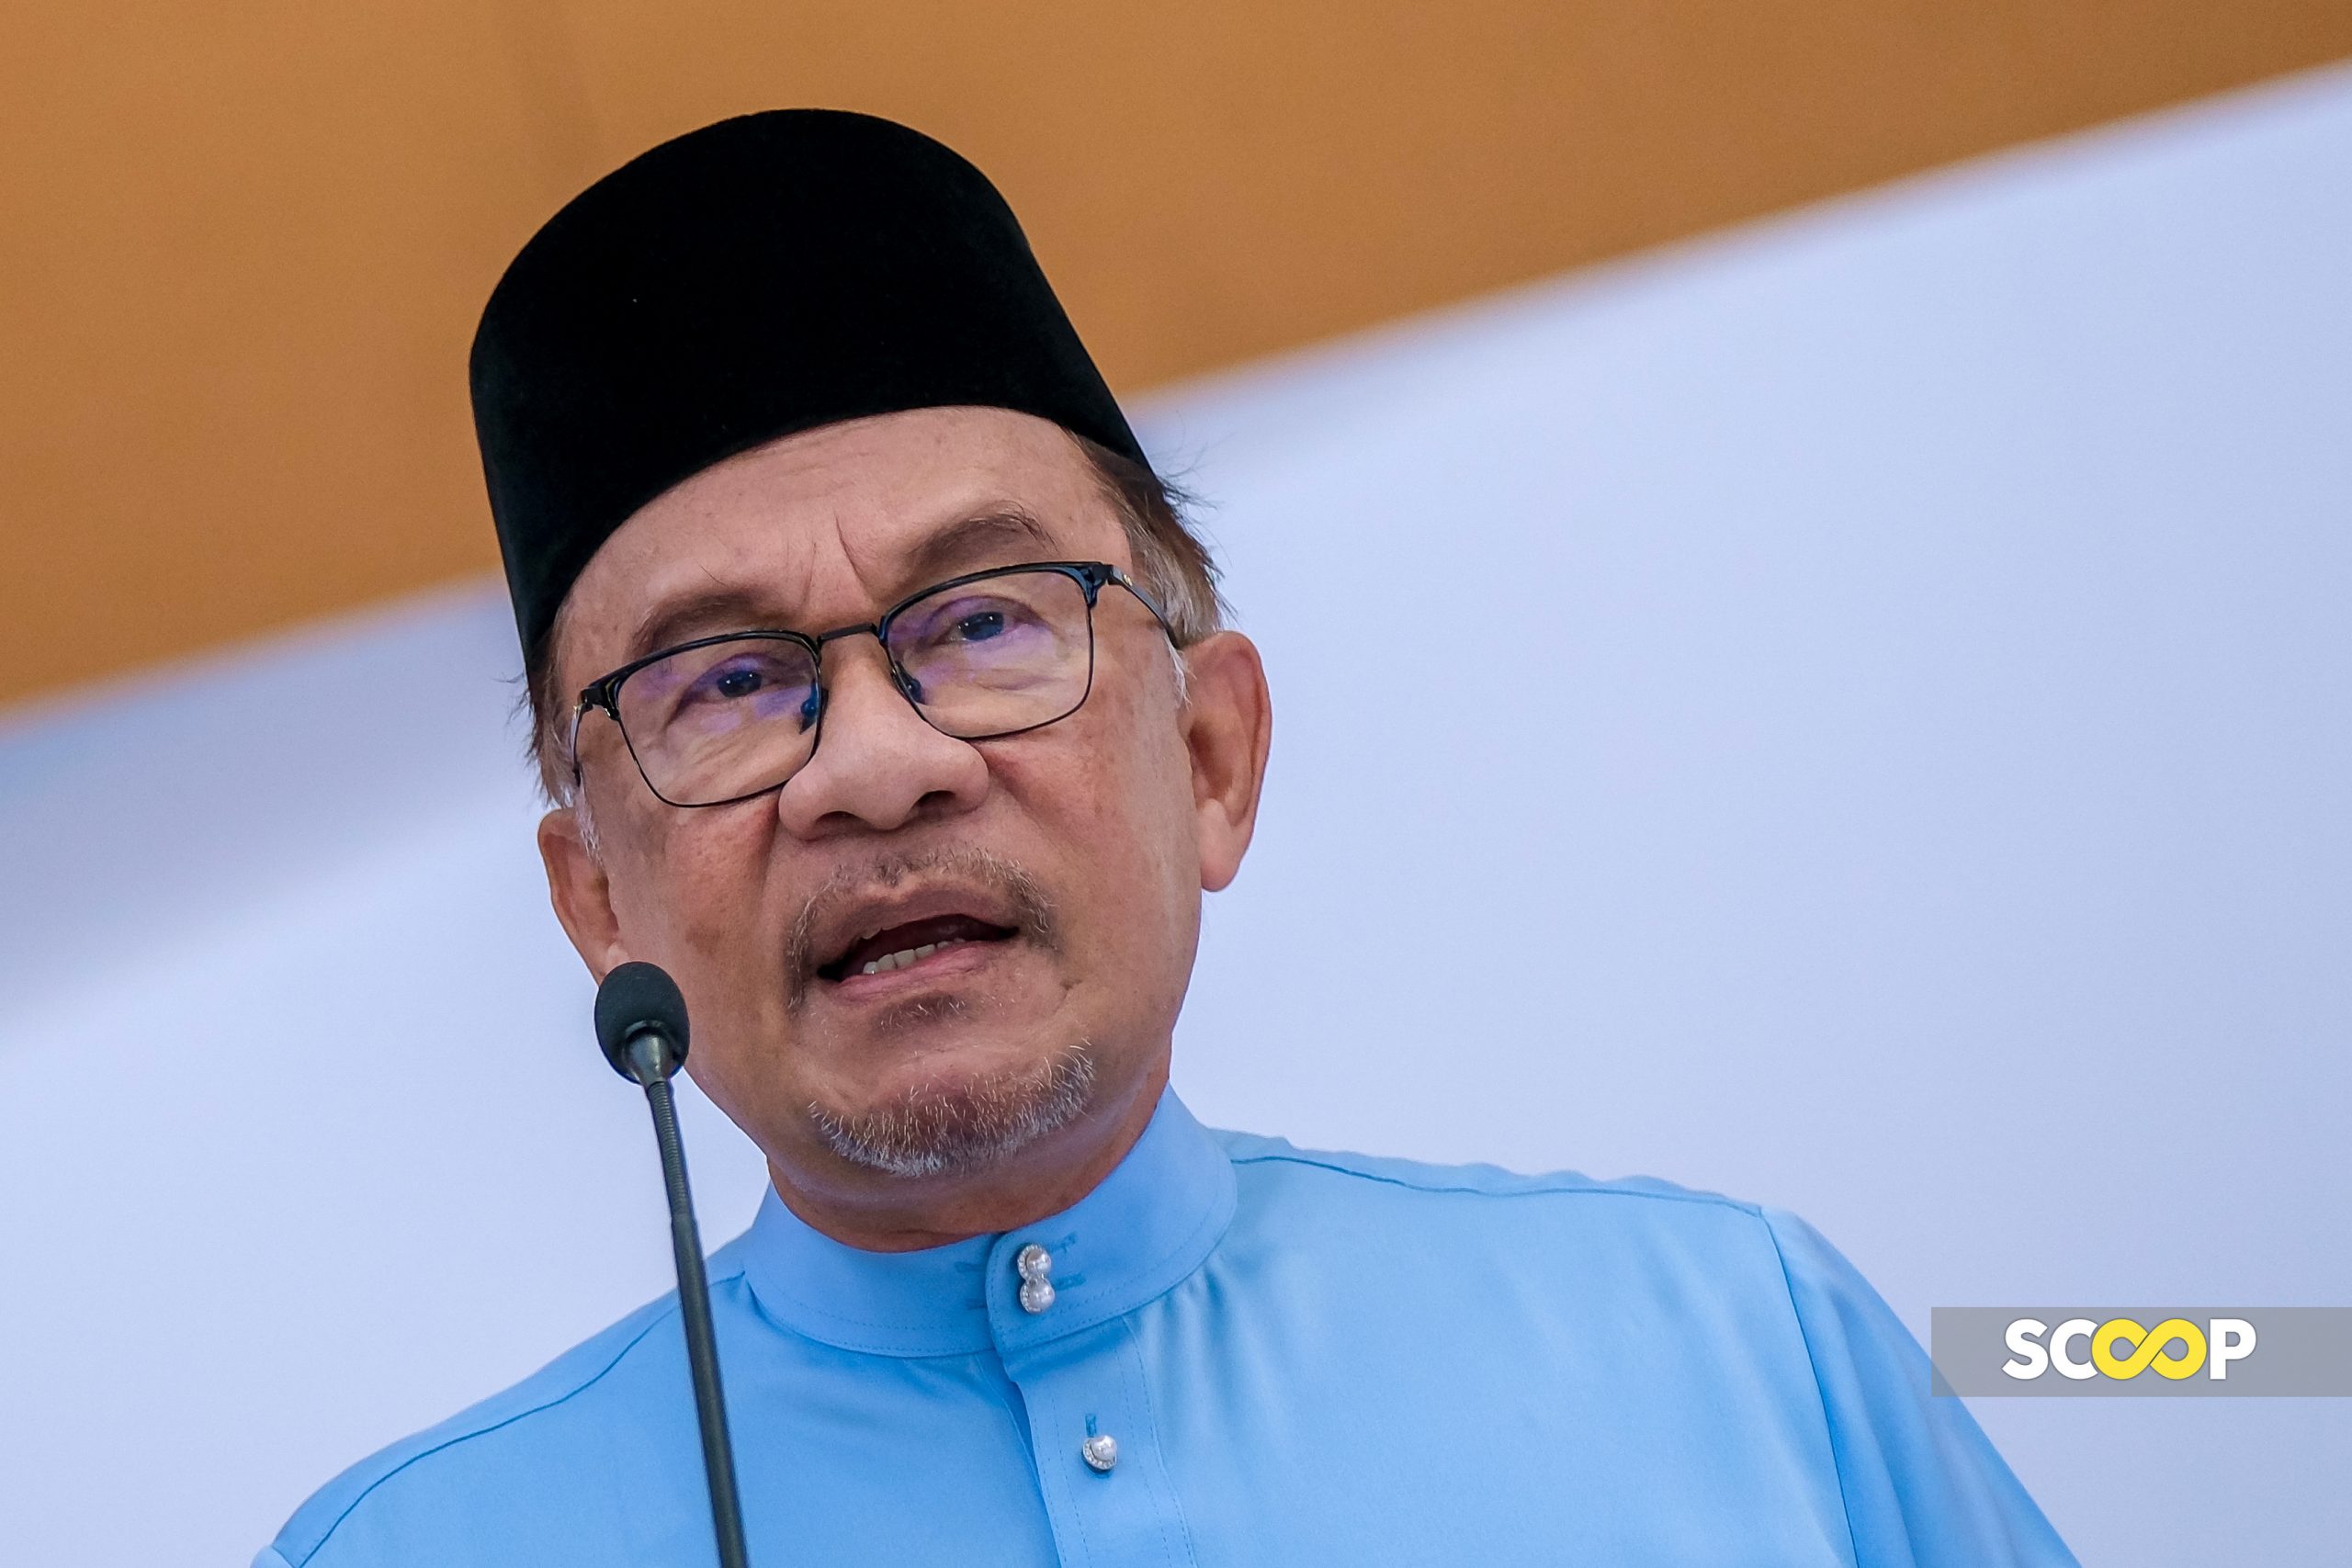 Malaysia kekal bersolidariti dengan perjuangan rakyat Palestin - PM